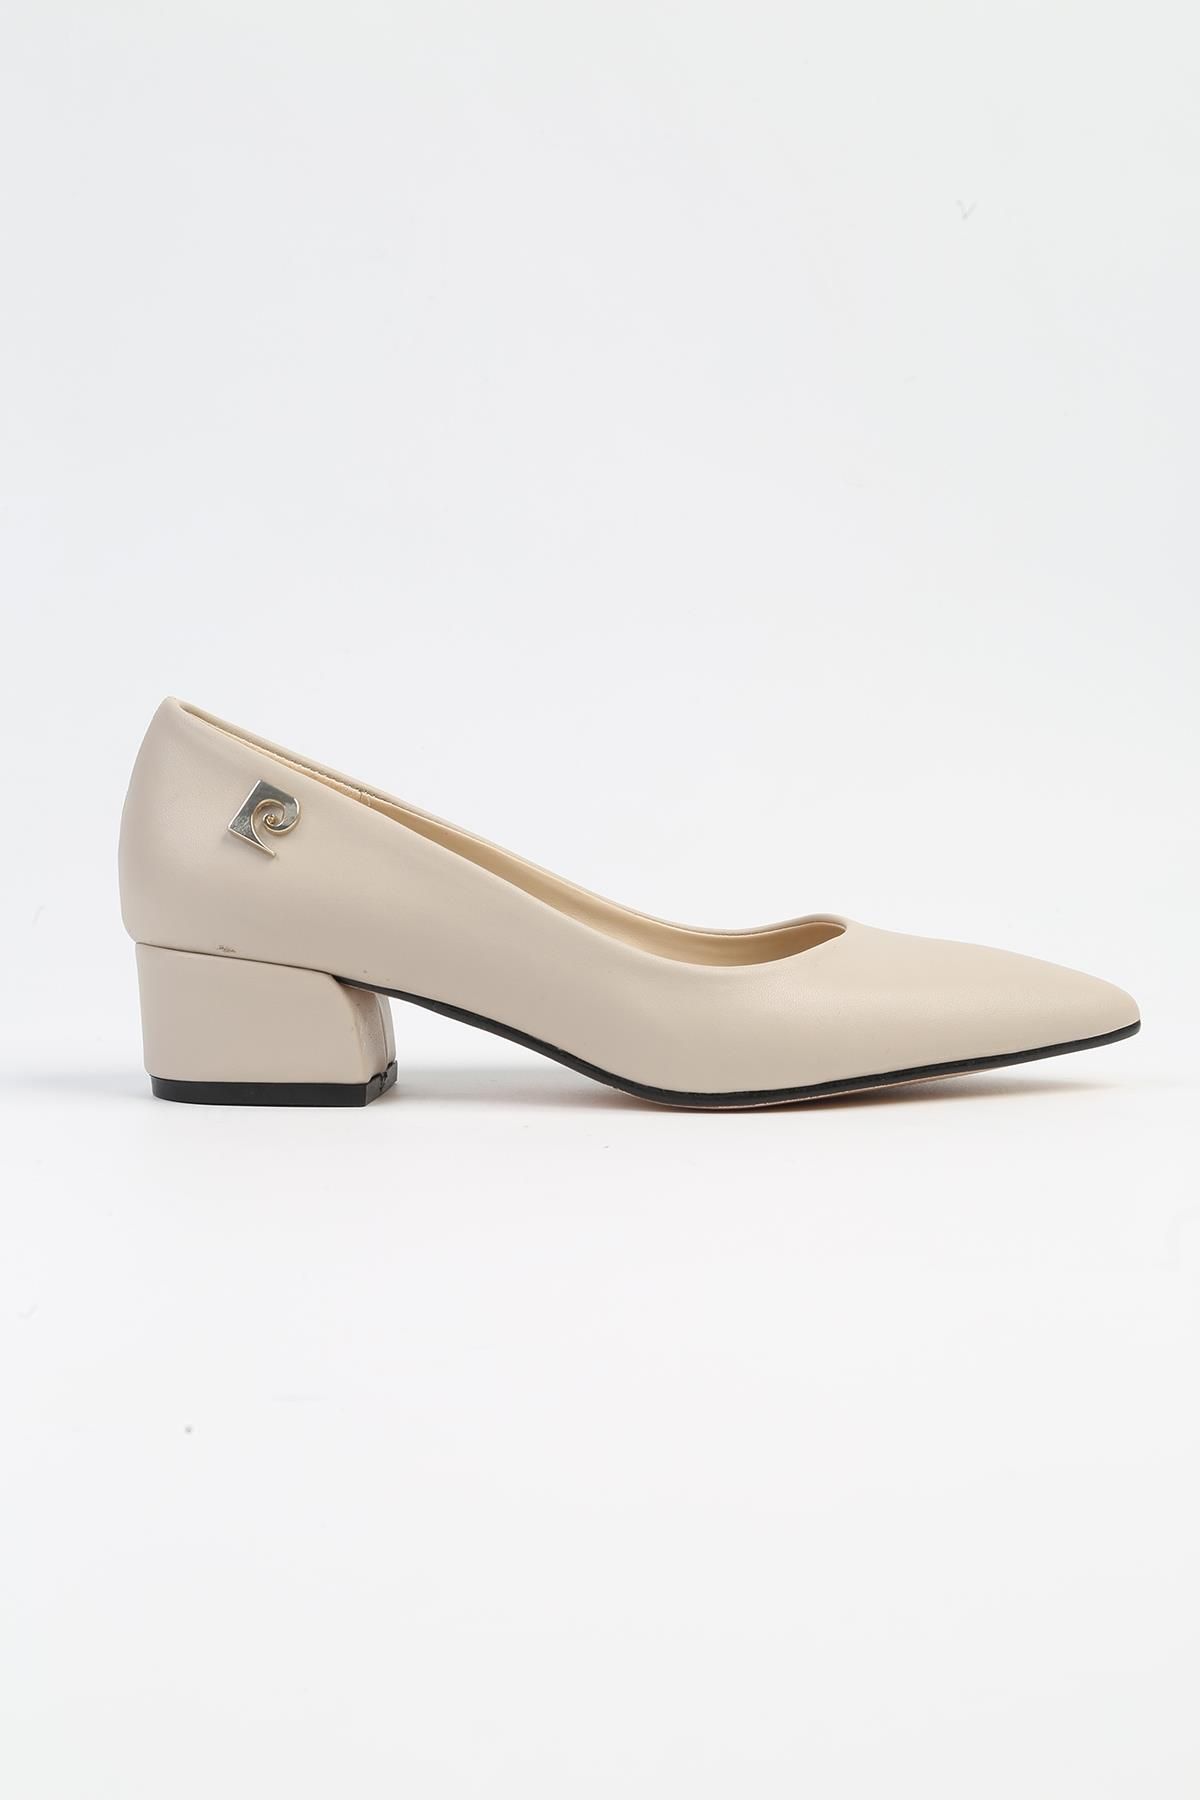 Pierre Cardin ® | PC-52566 - 3478 Bej Cilt - Kadın Topuklu Ayakkabı